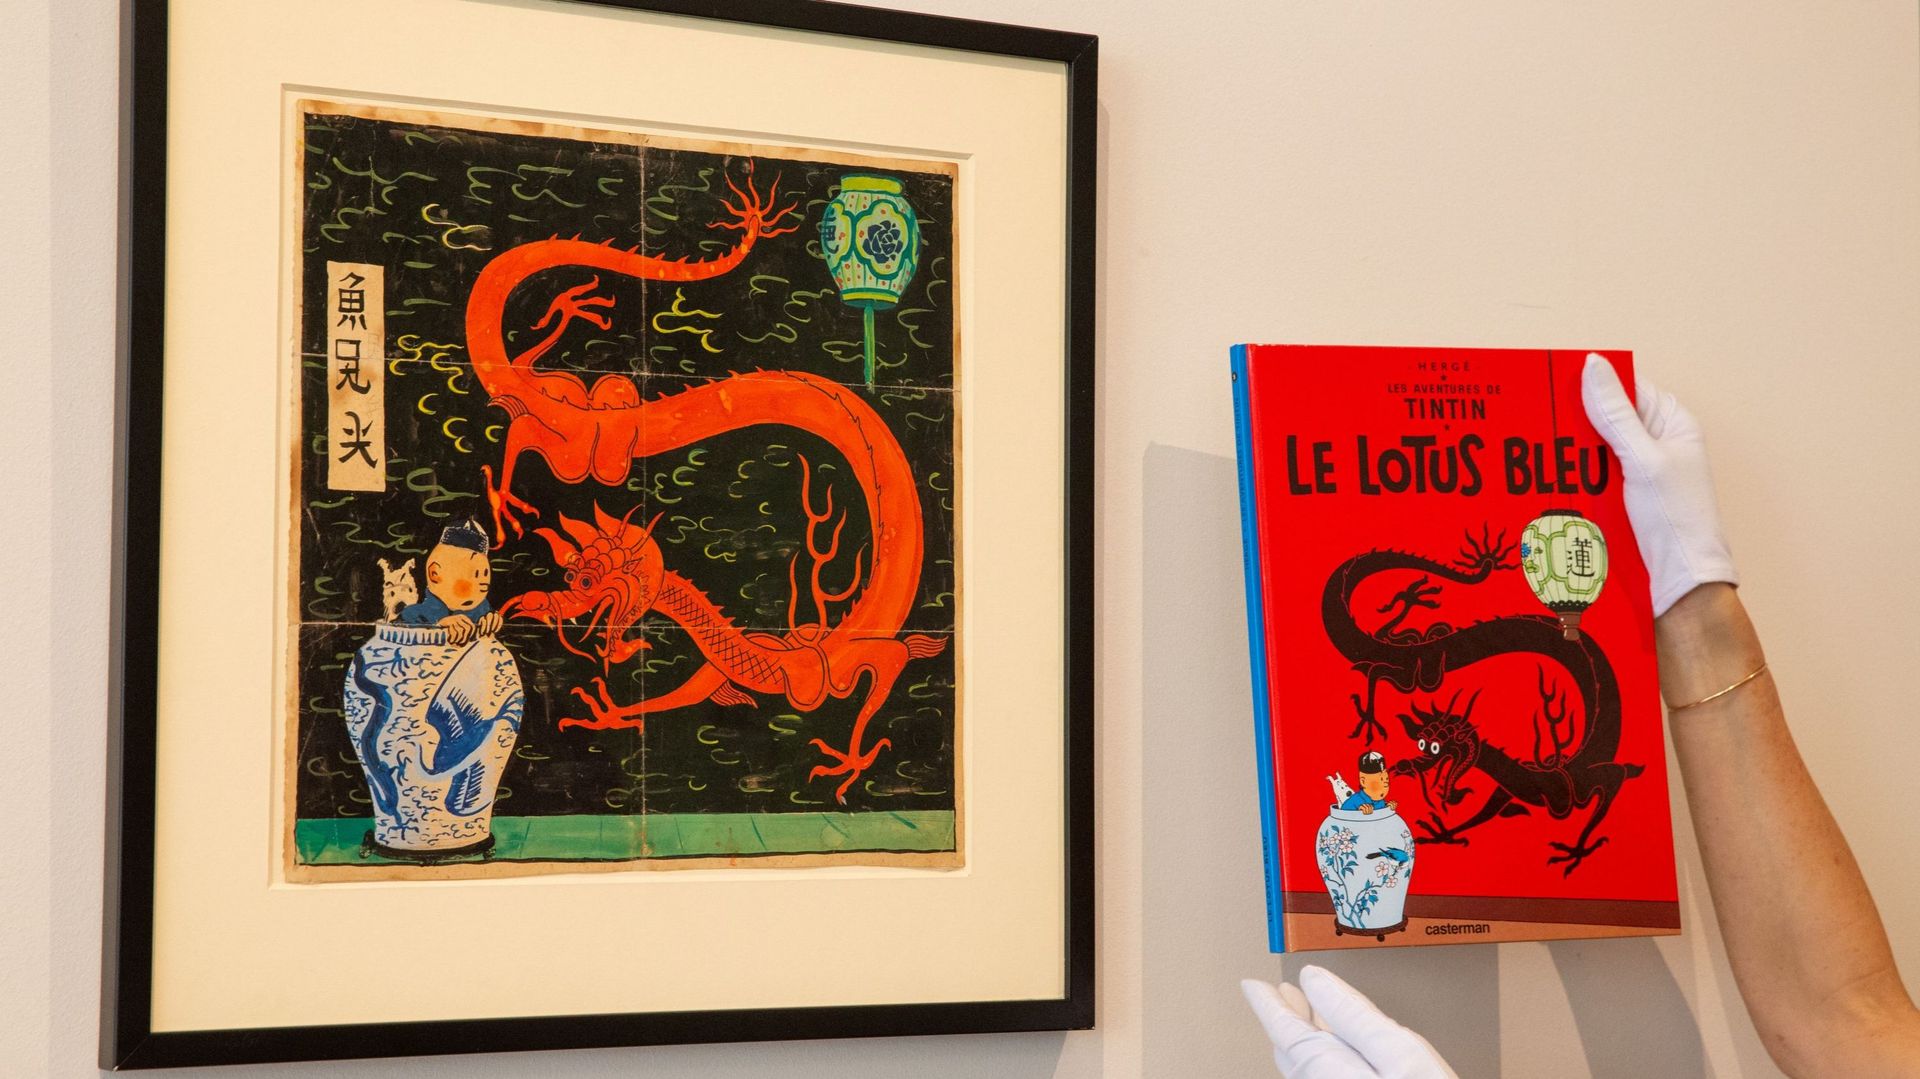 Une couverture inédite de Tintin aux enchères: l'incroyable histoire derrière ce chef-d'œuvre estimé à 3M €